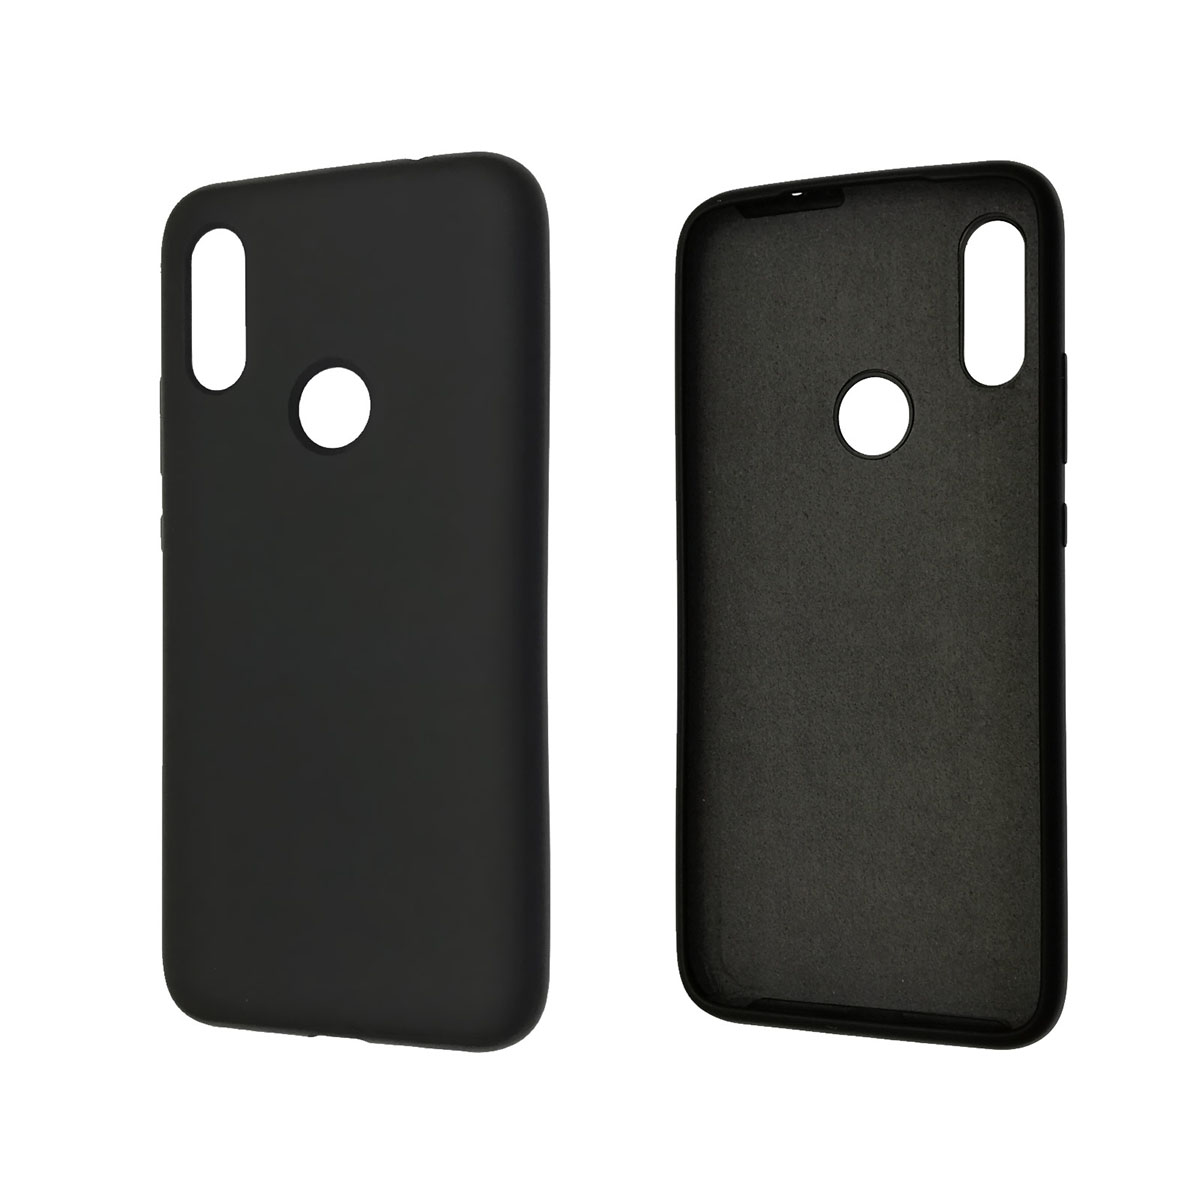 Чехол накладка Silicon Cover для XIAOMI Redmi 7, силикон, бархат, цвет черный.